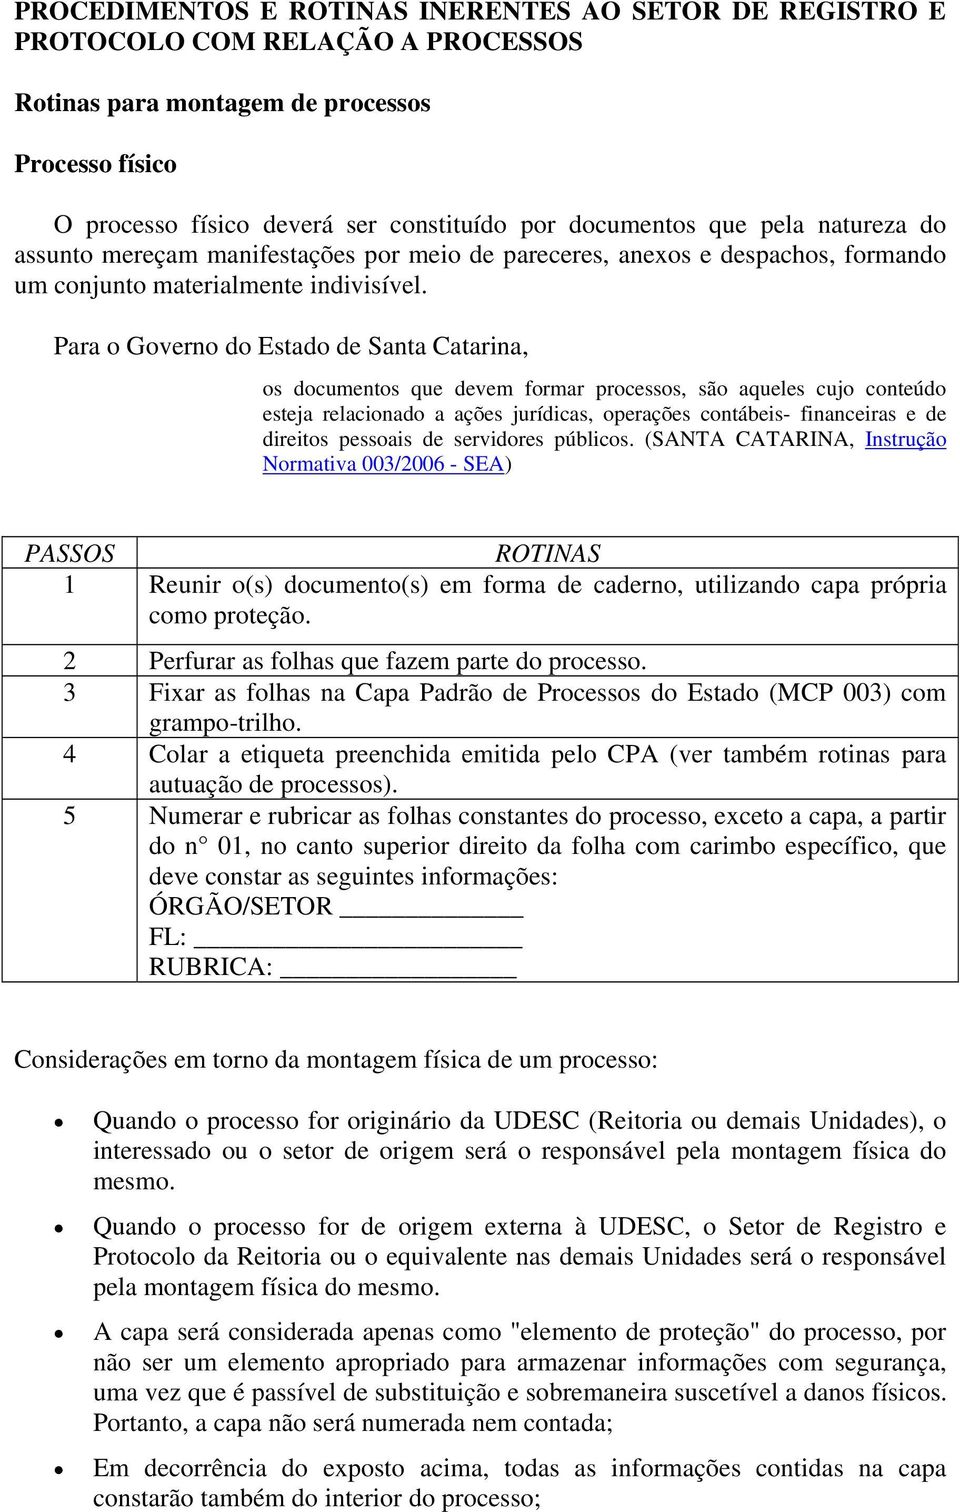 Para o Governo do Estado de Santa Catarina, os documentos que devem formar processos, são aqueles cujo conteúdo esteja relacionado a ações jurídicas, operações contábeis- financeiras e de direitos